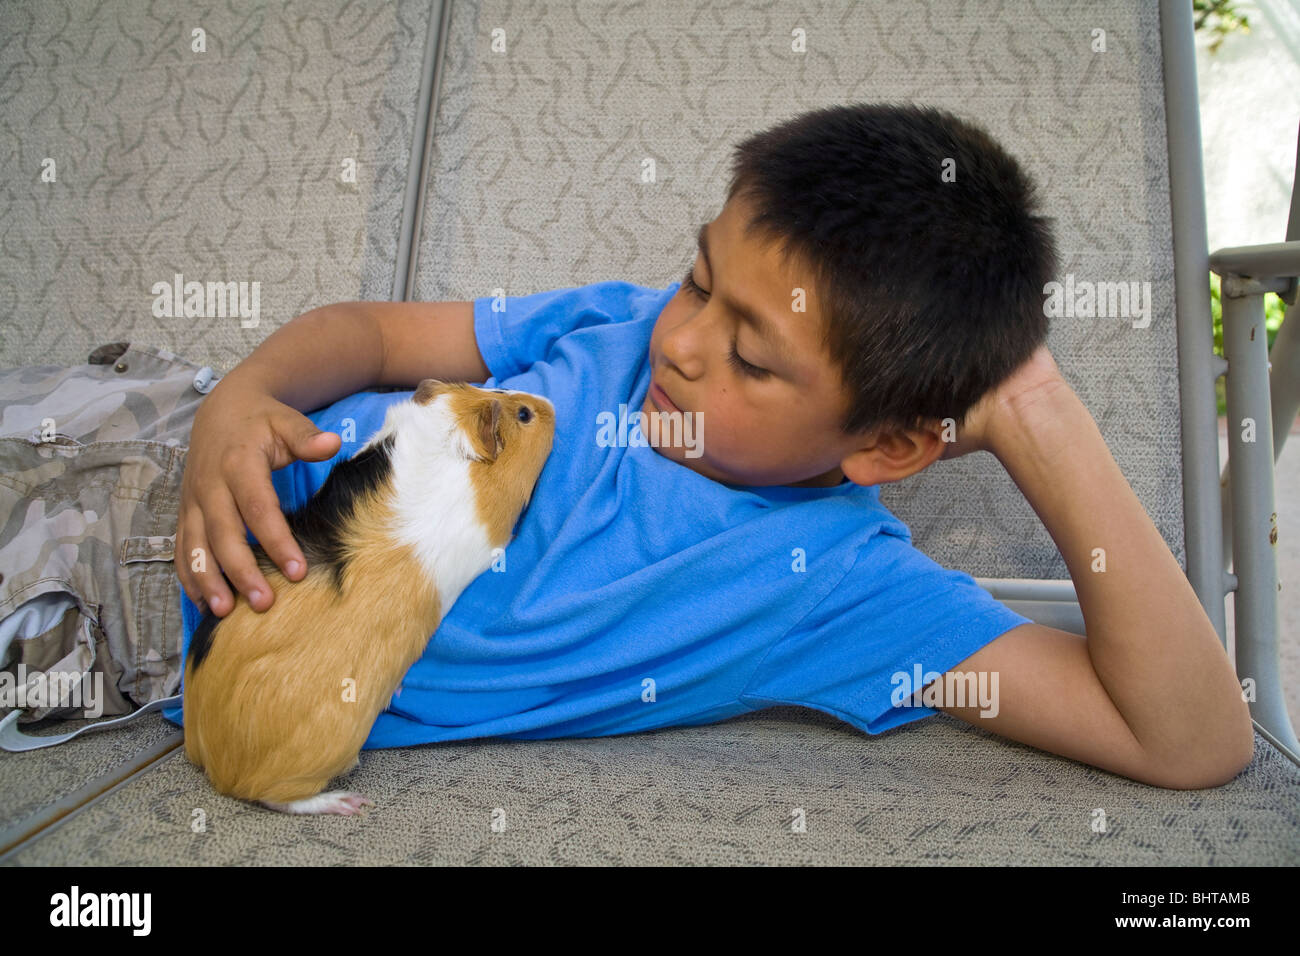 8-9 Jahre Alter spanischer Junge entspannen entspannt entspannt relaxen mit seinem Meerschweinchen auf außen Schaukel spielen. Vereinigten Staaten Herr © Myrleen Pearson Stockfoto